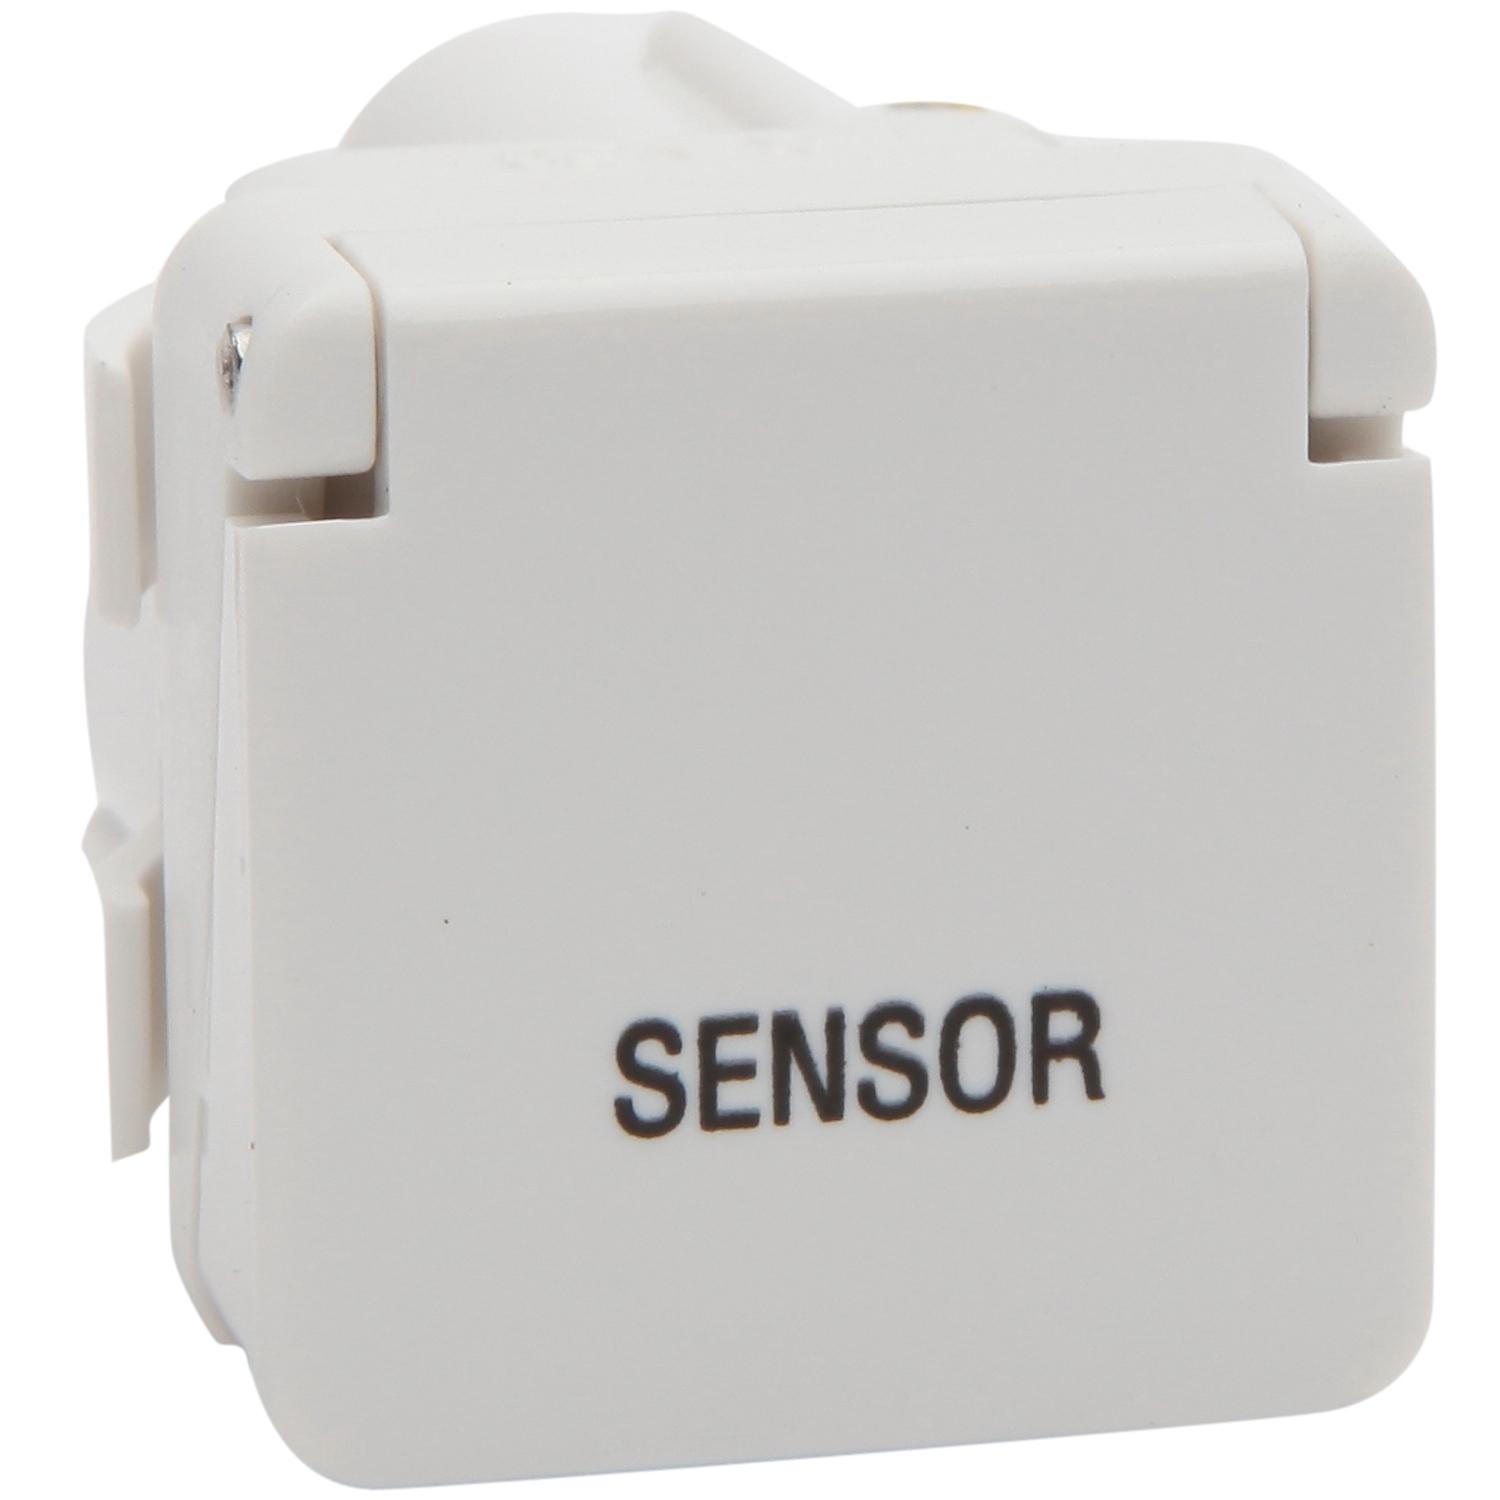 PDL 600 Series - Module Switch 2-Way 16A 1P + Lid SENSOR - White